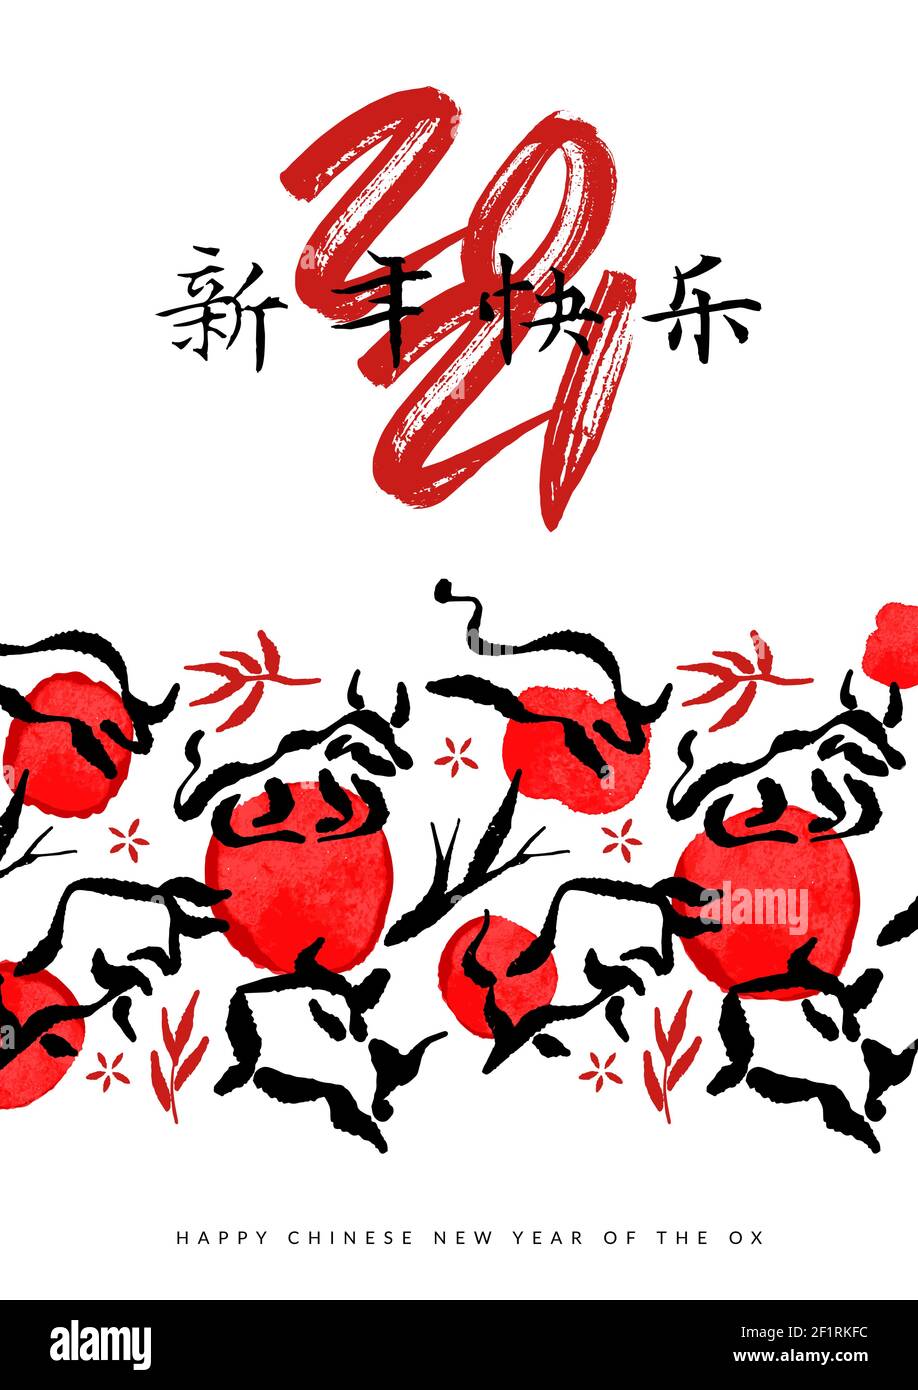 Felice anno nuovo cinese del bue, 2021 biglietto d'auguri illustrazione. Inchiostro tradizionale rosso asiatico pennello foglia di bambù, fiore e animale toro. Calligraphy tr Illustrazione Vettoriale